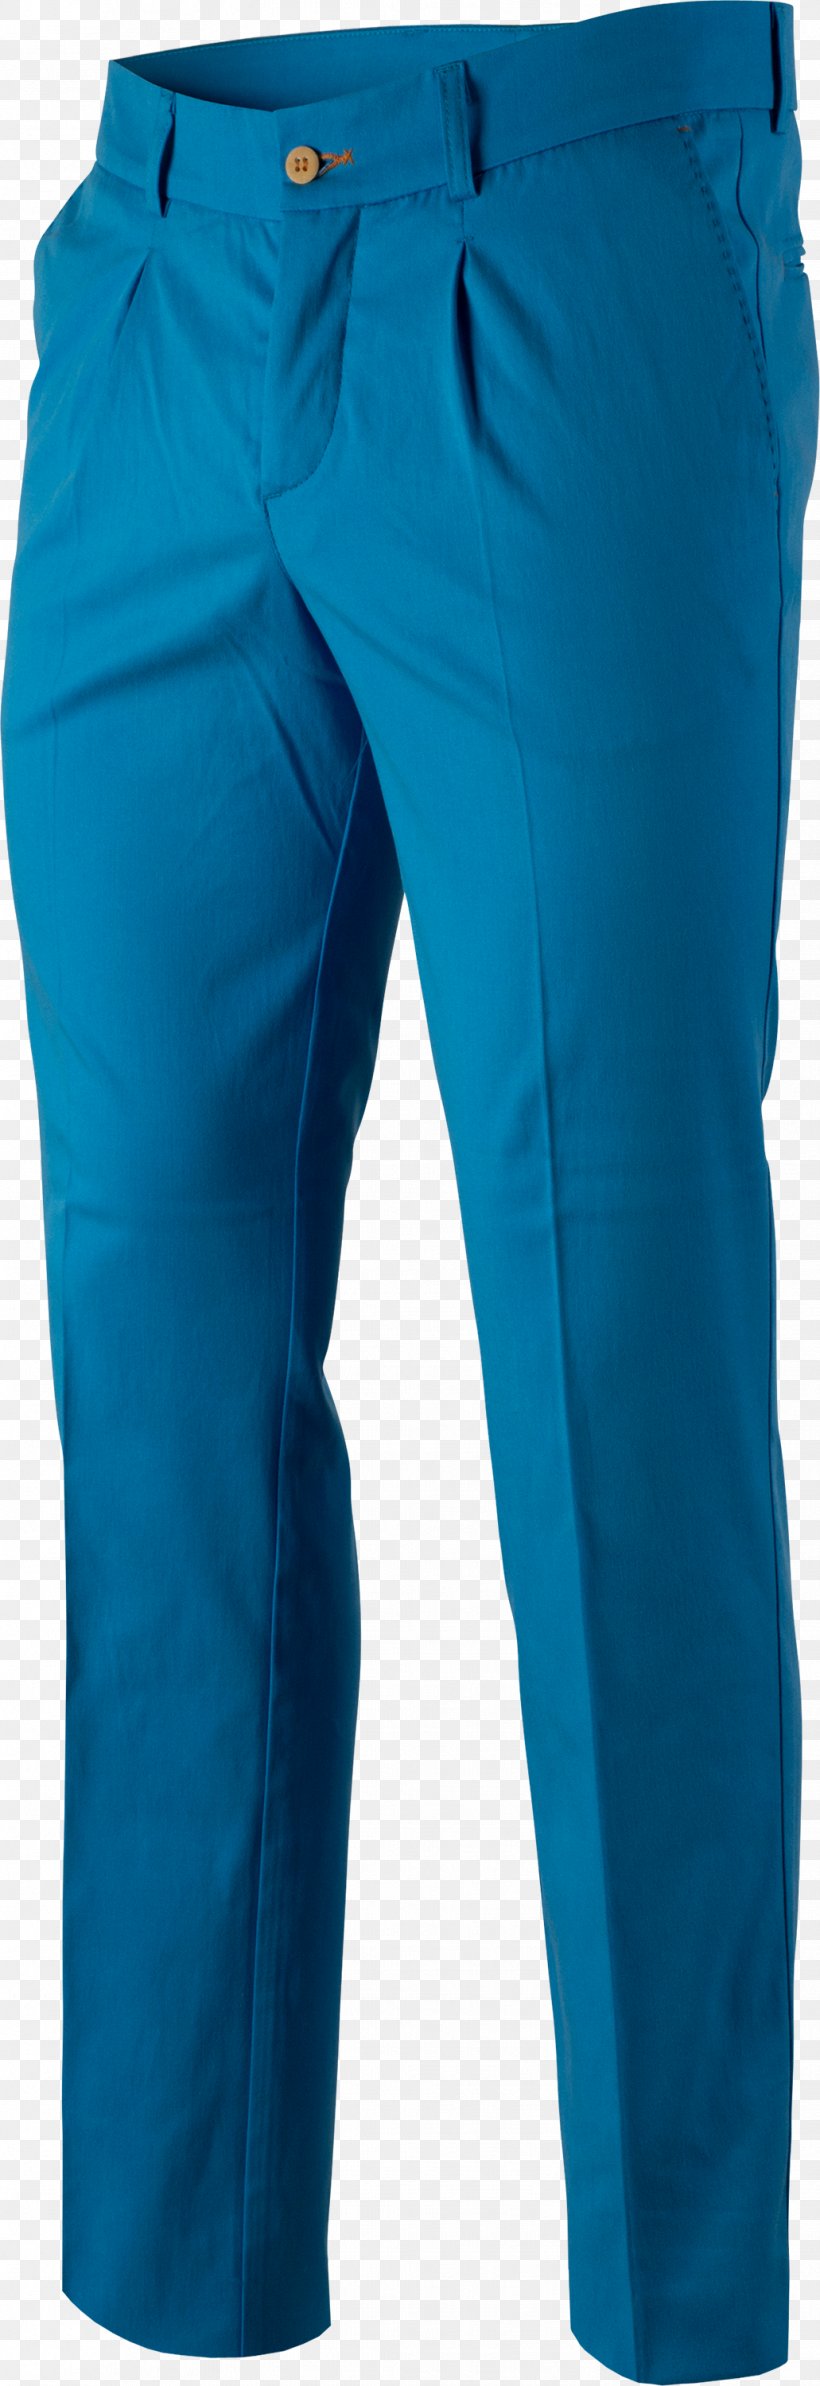 Jeans Cobalt Blue Waist Pants, PNG, 1031x3000px, Jeans, Active Pants, Aqua, Azure, Cobalt Blue Download Free